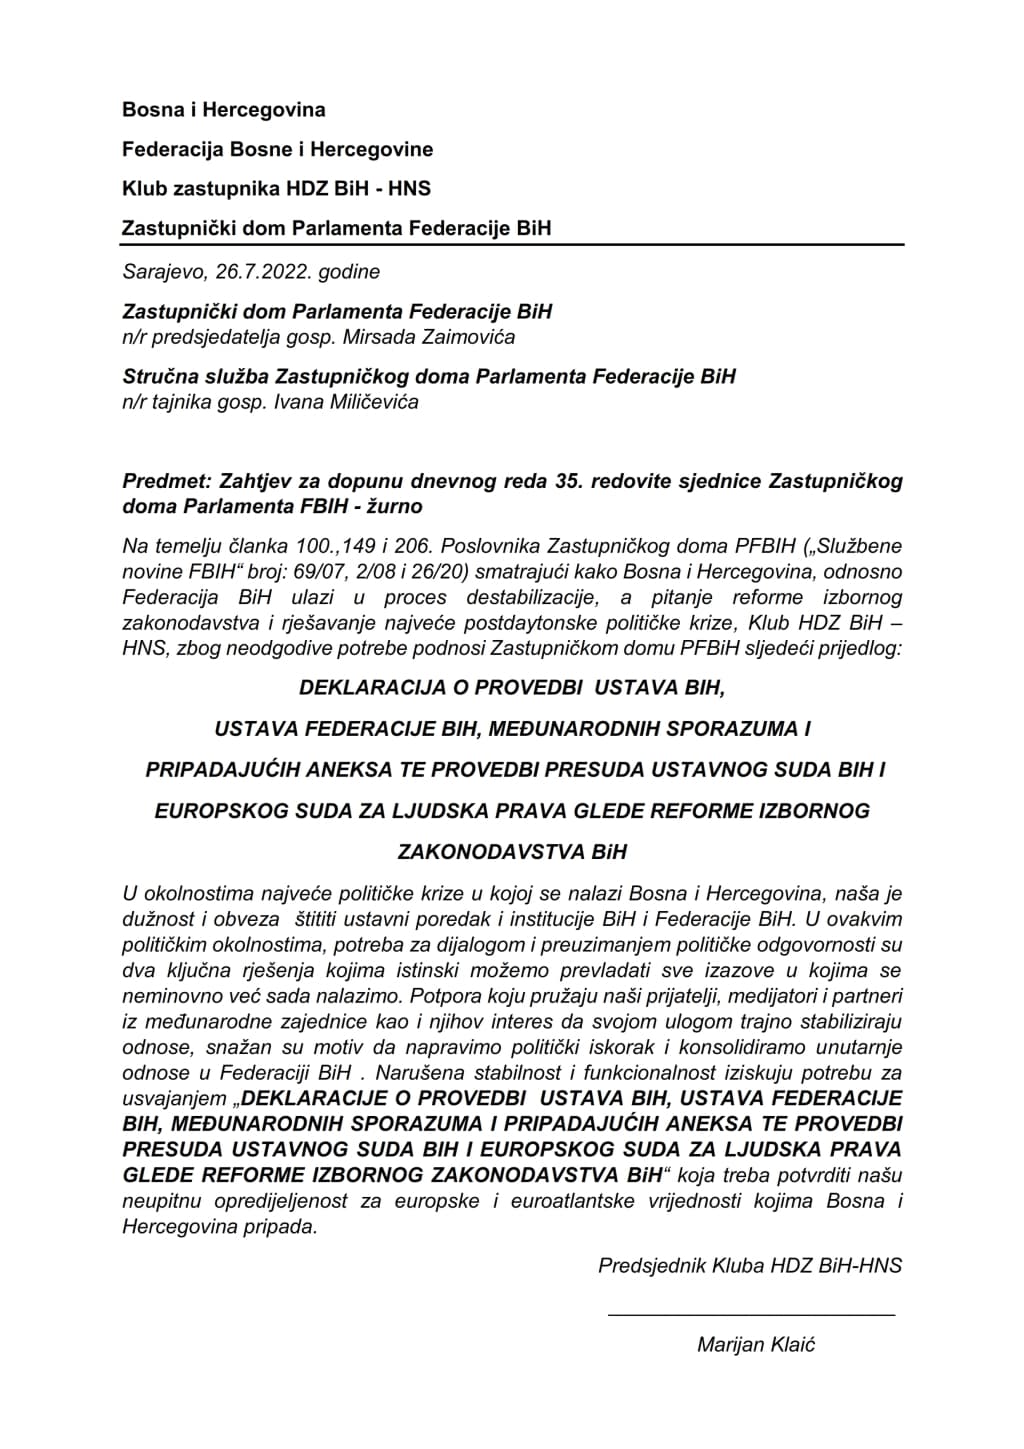 Deklaracija HDZ BiH-HNS_001.jpg